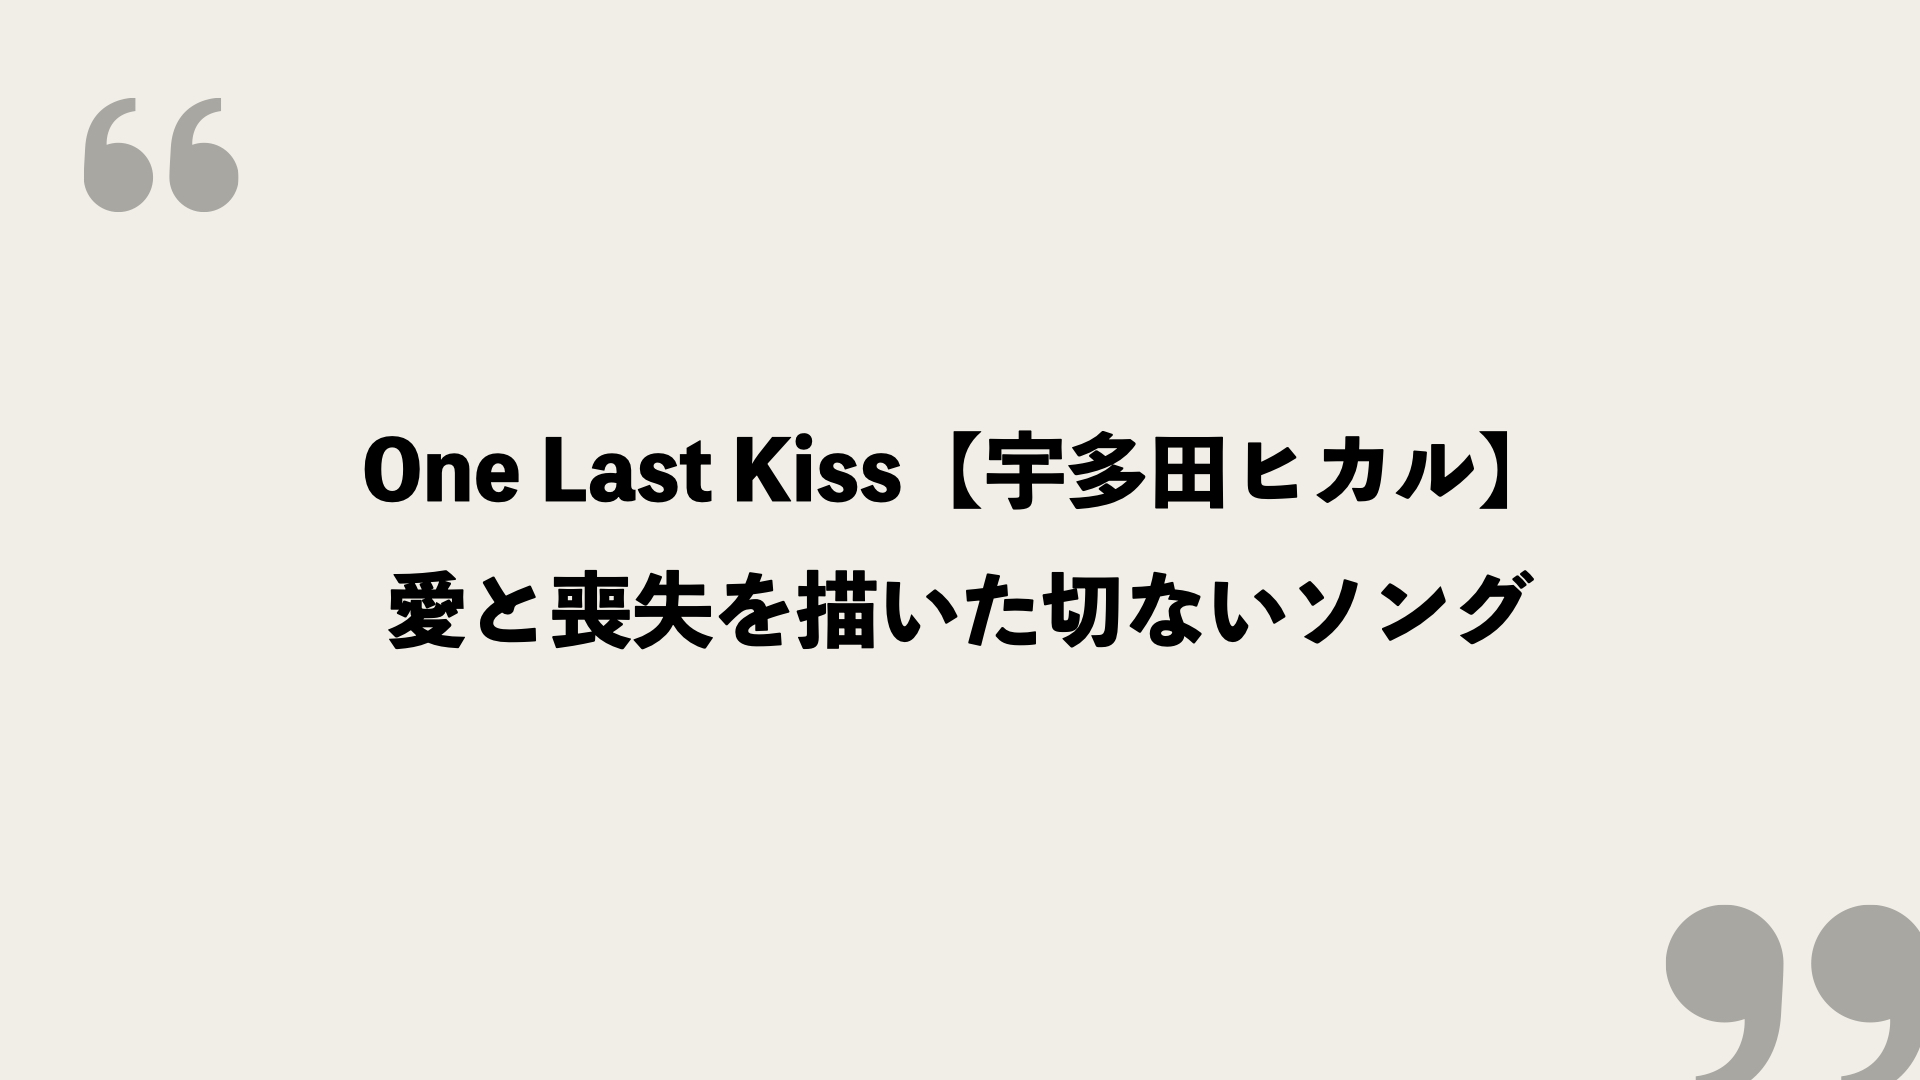 One Last Kiss 宇多田ヒカル の歌詞を考察 愛と喪失を描いた切ないソング Framu Media